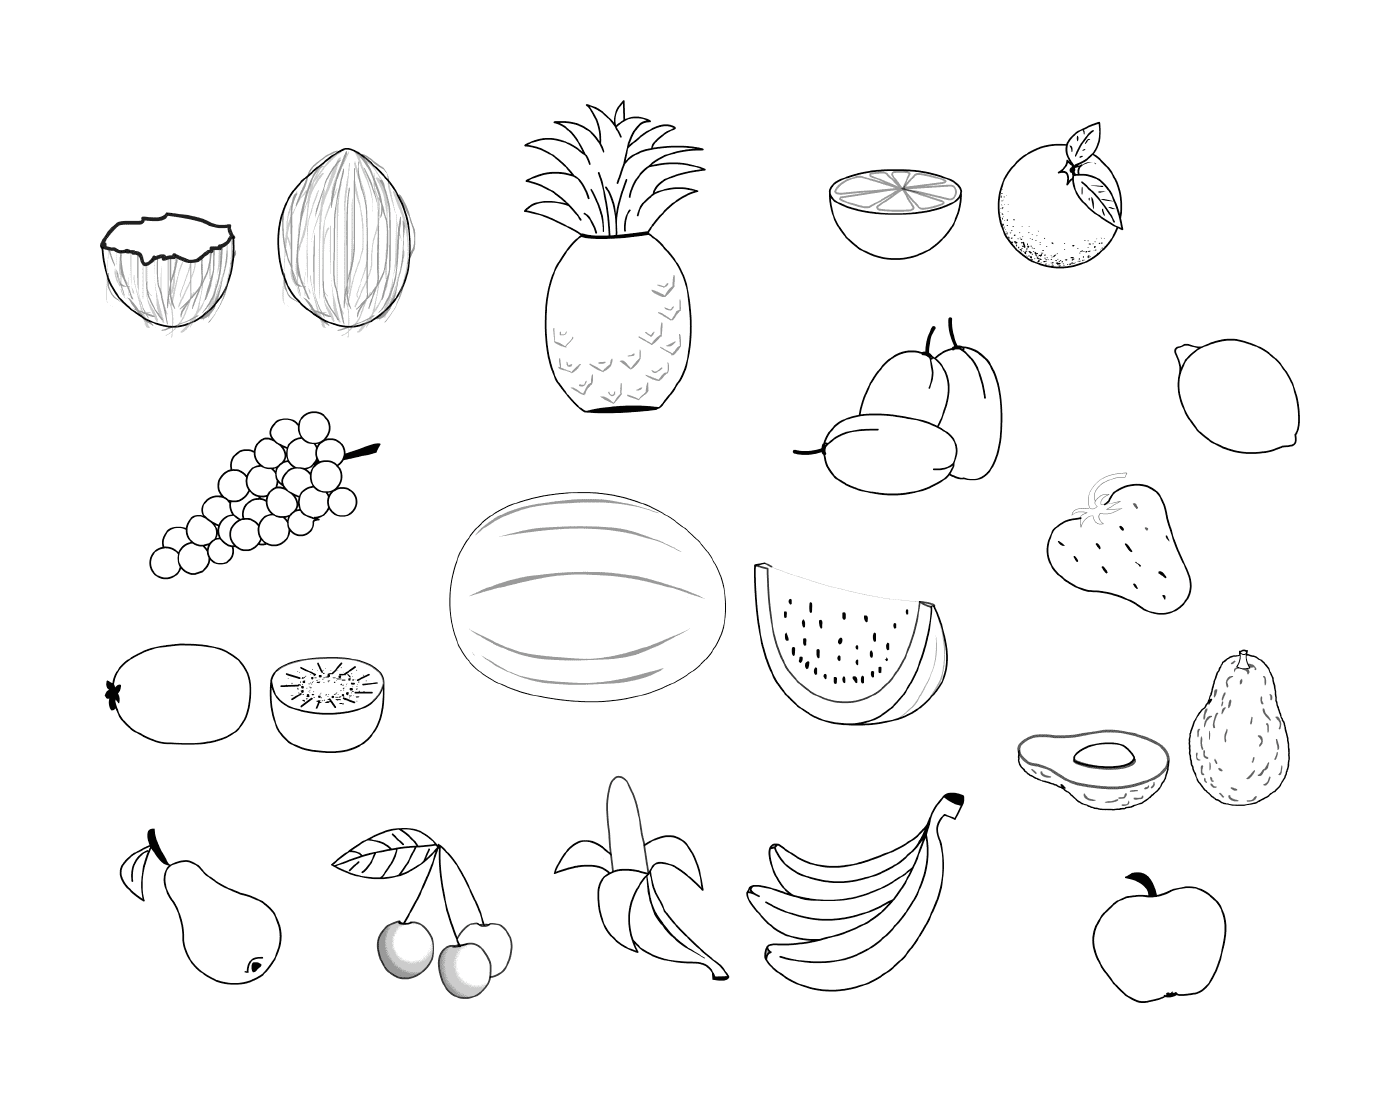  Várias frutas nesta página 